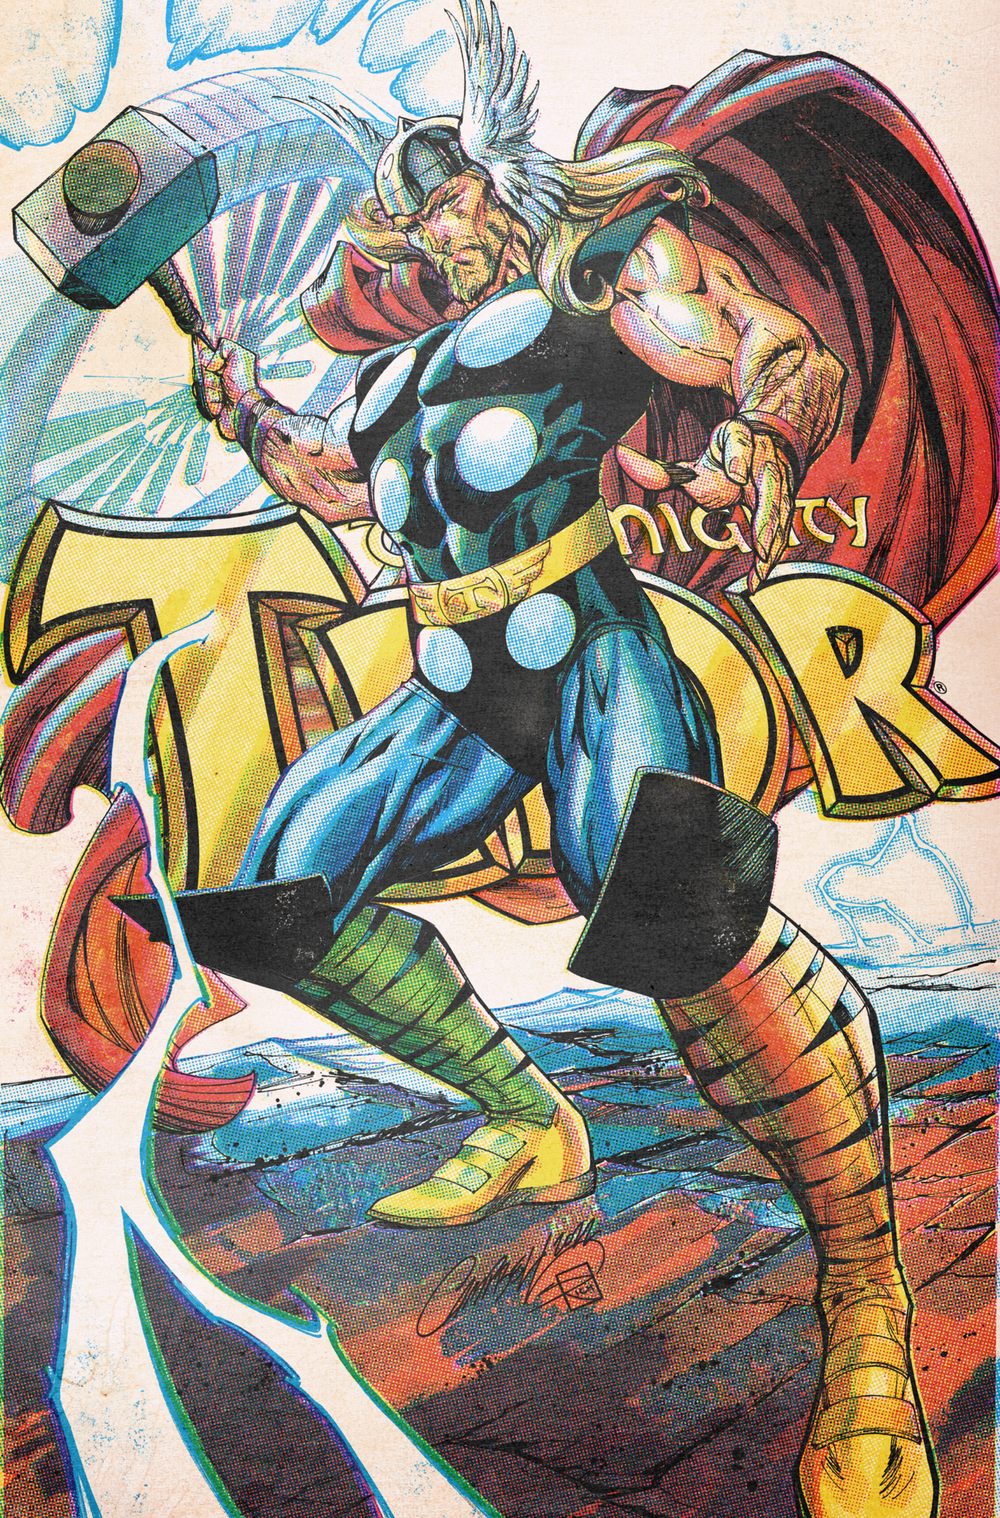 Thor #25 JSC [C] INCENTIVE 1:200 Retro